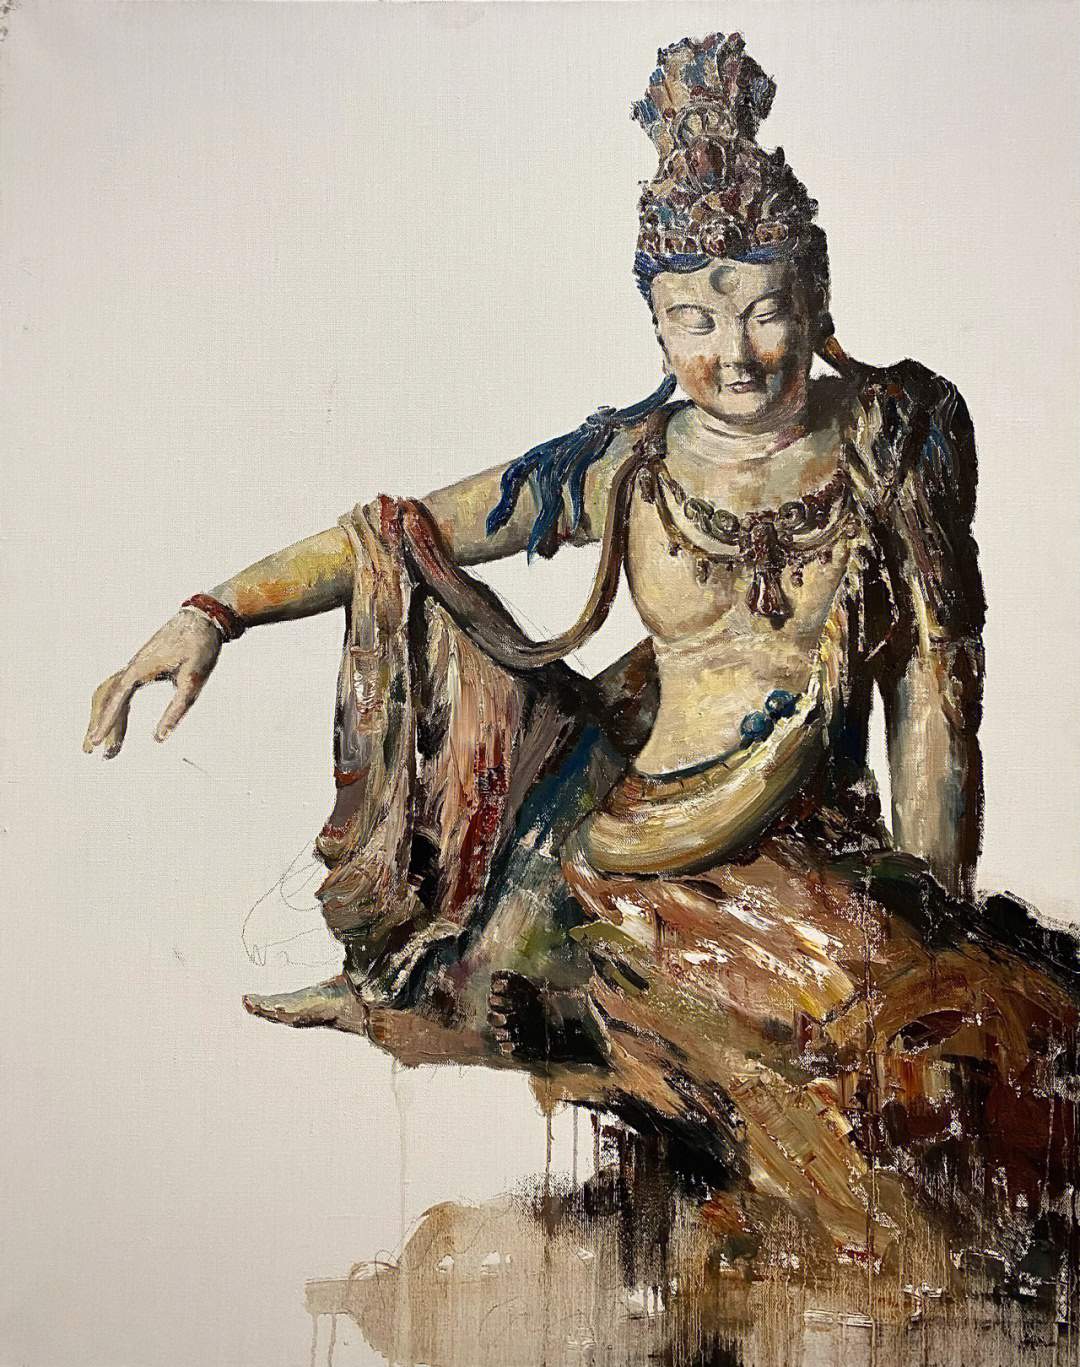 佛教油画作品图片